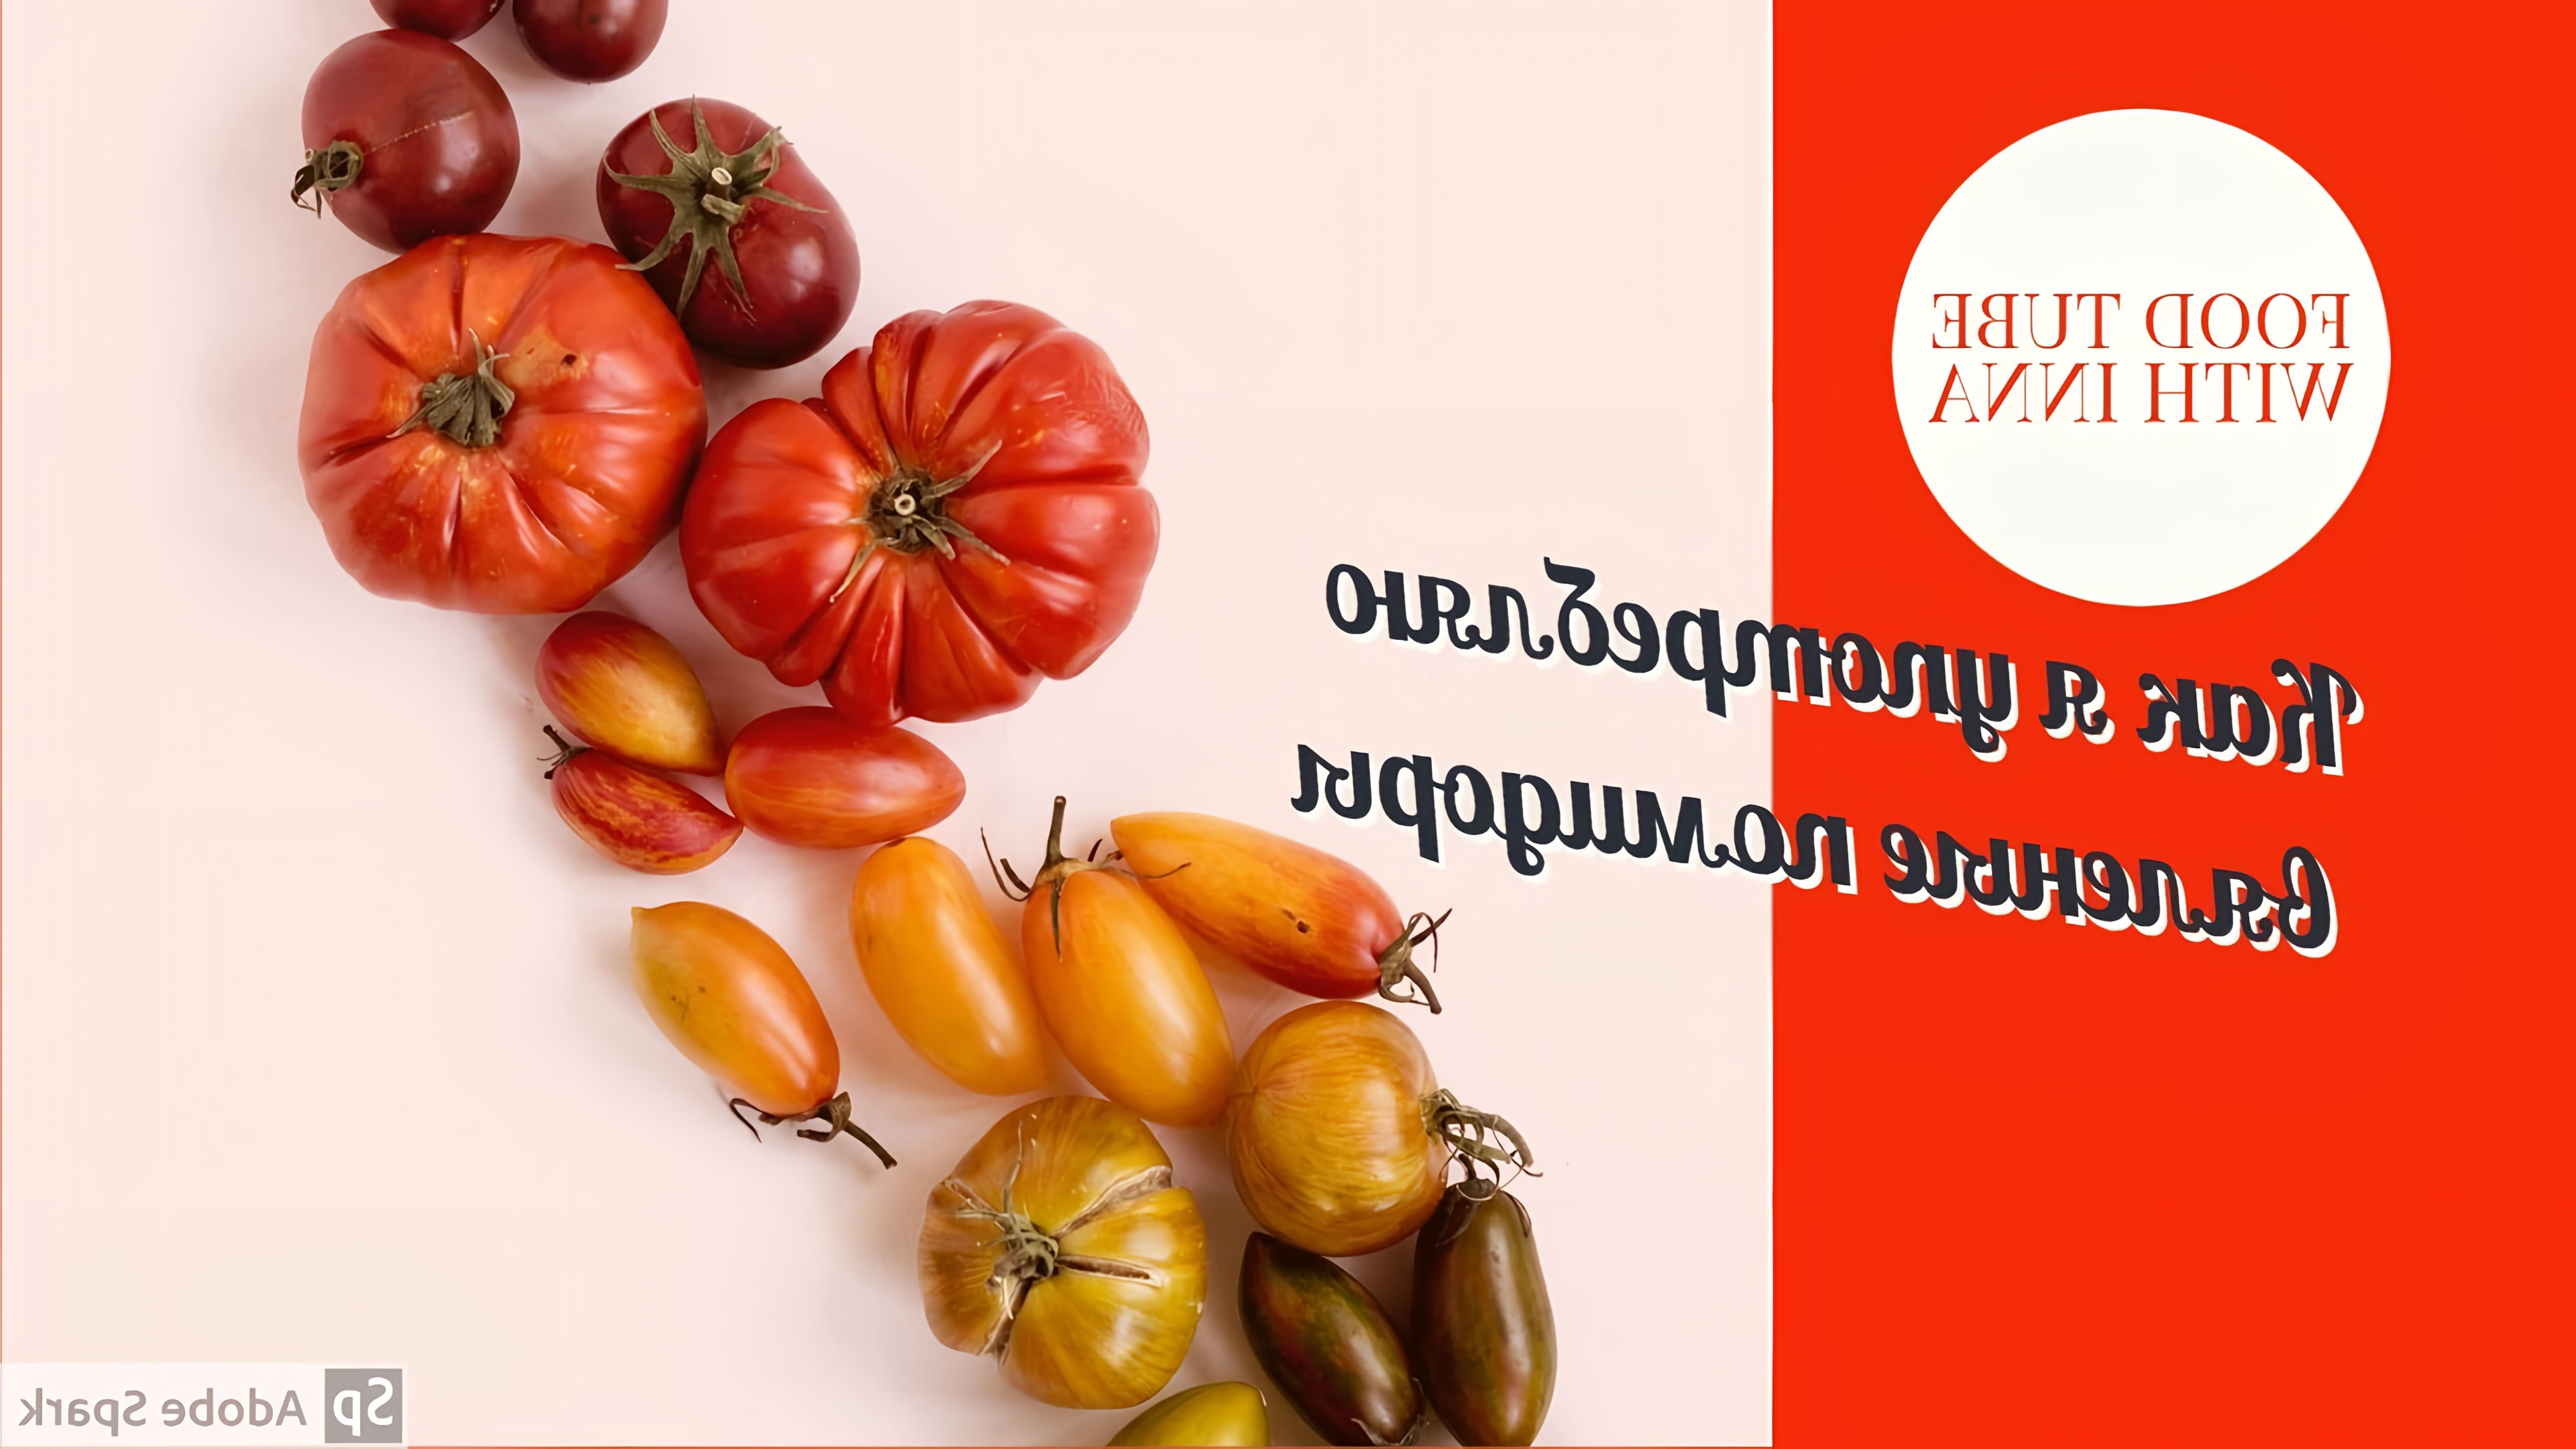 В этом видео автор делится тремя способами употребления вяленых помидоров